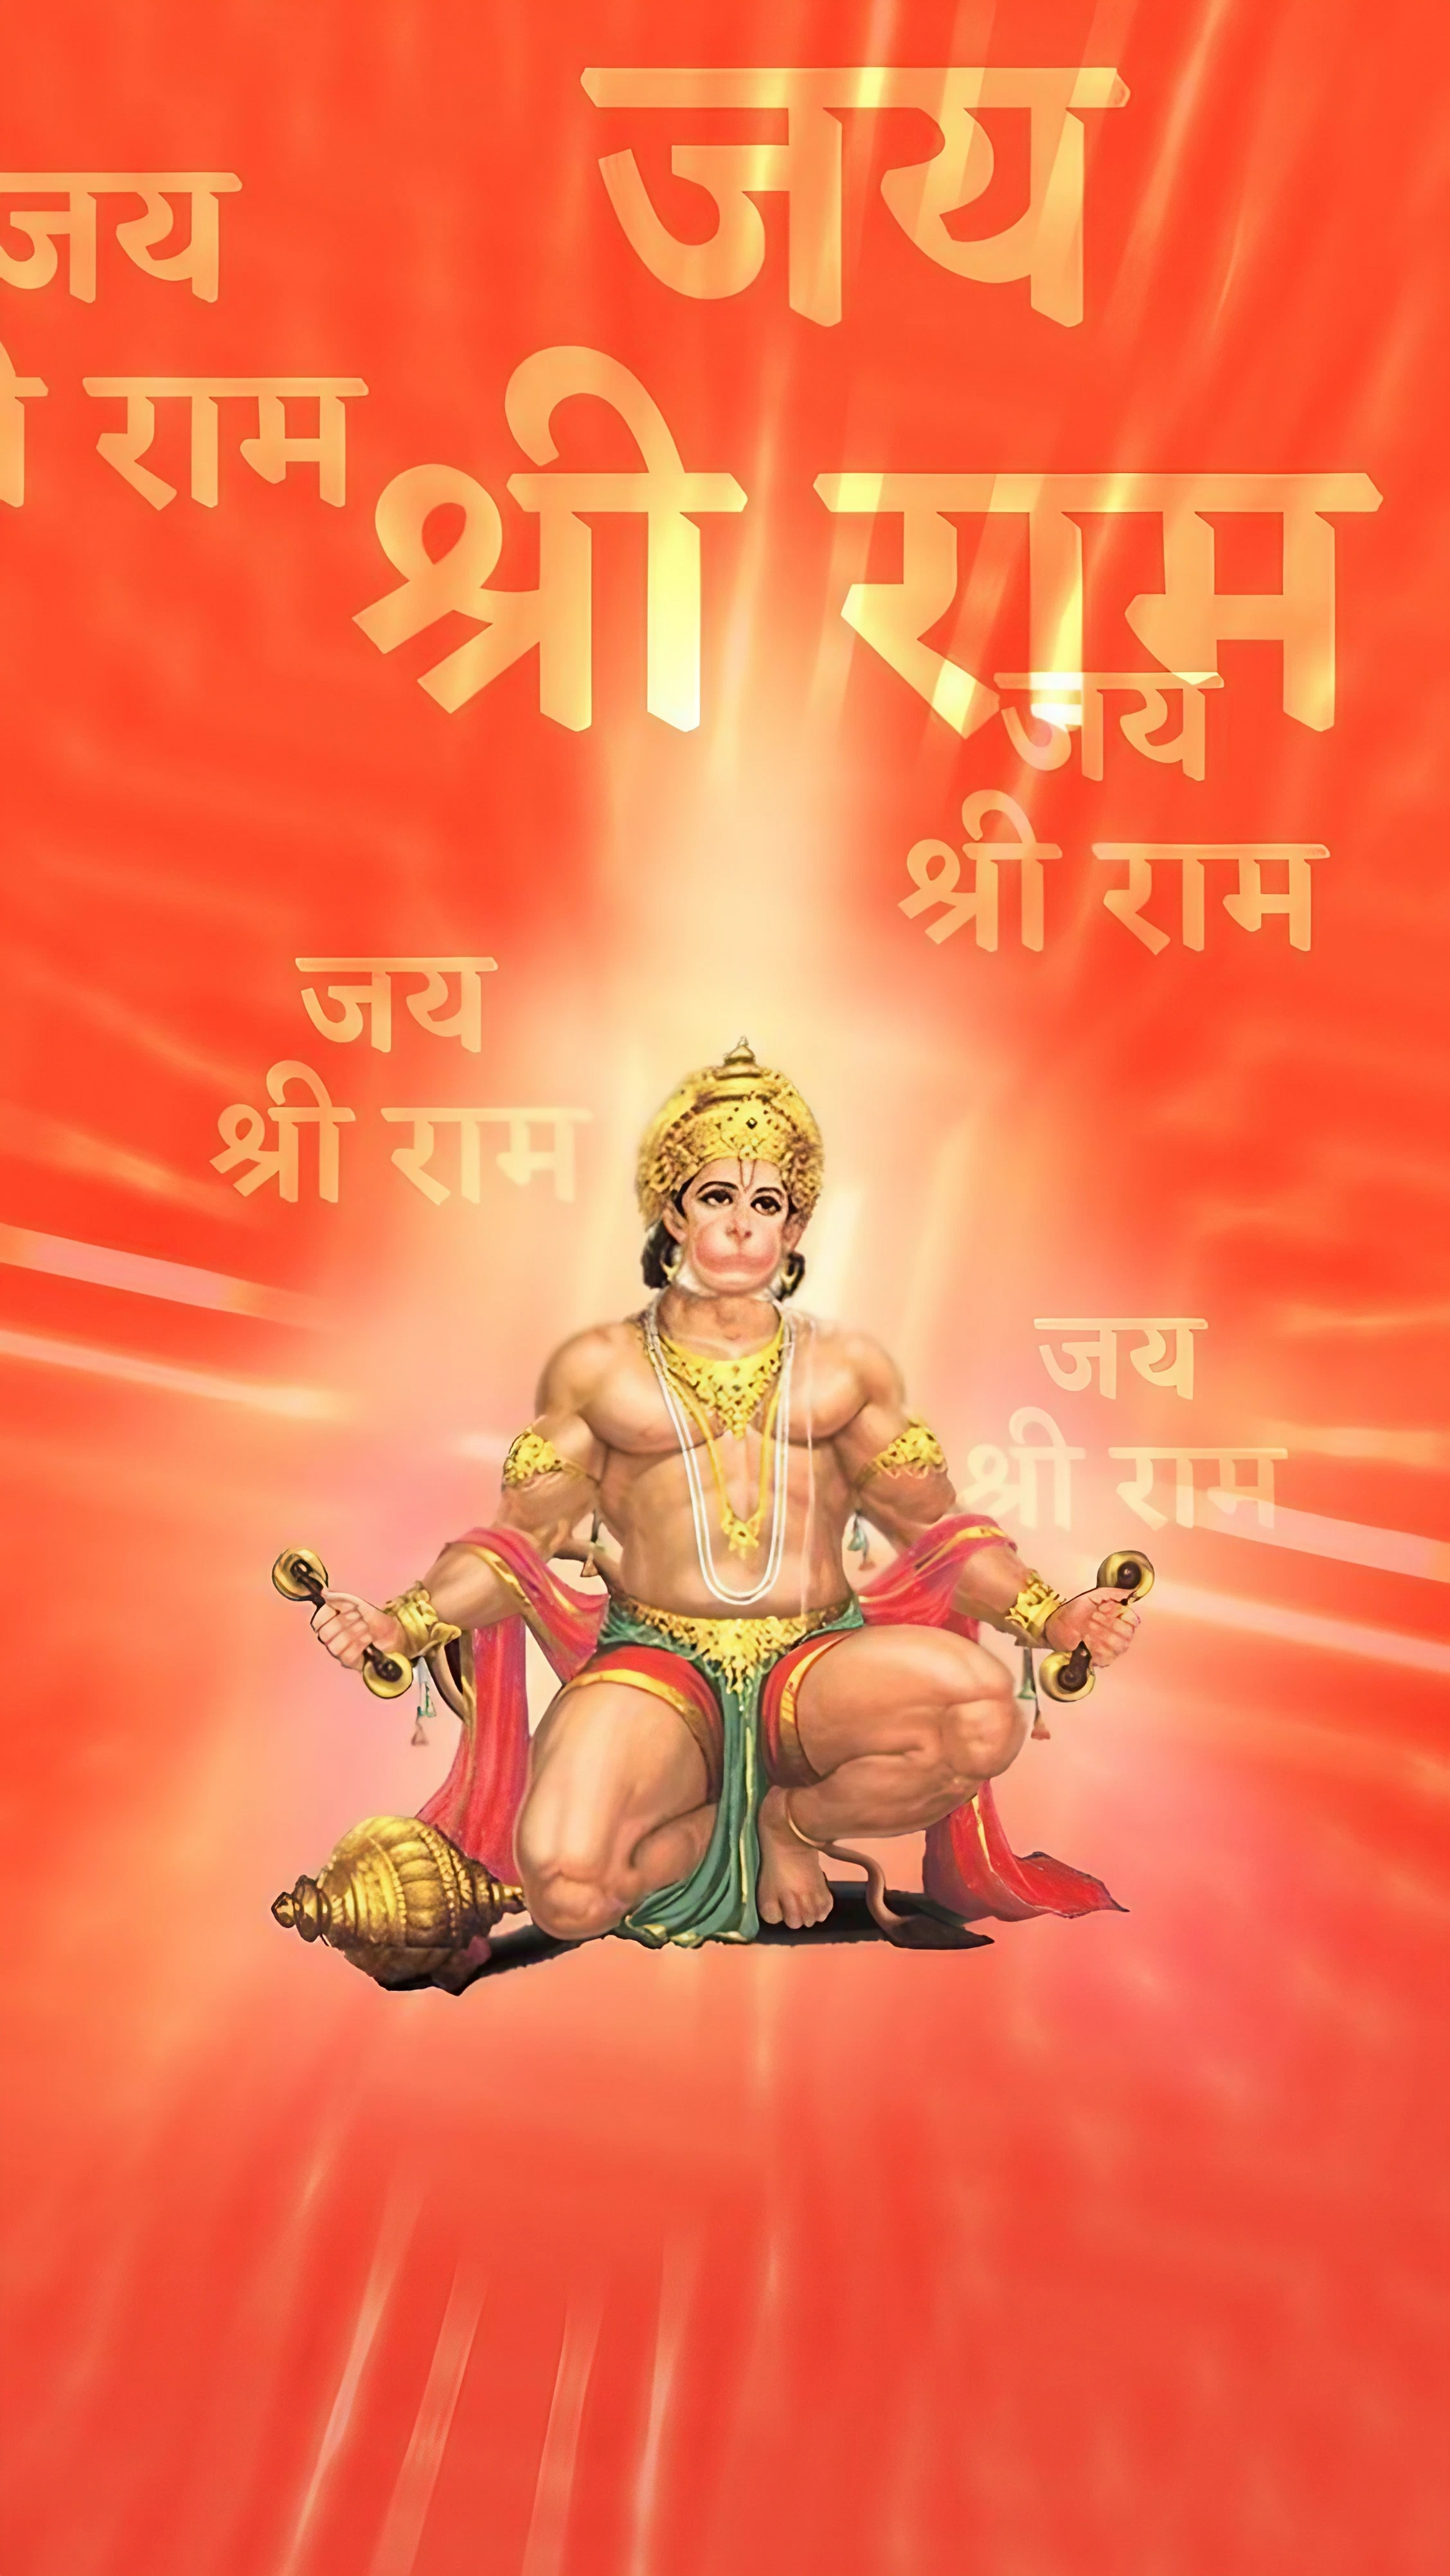 Baba Hanuman Ji Ke - jai shri ram